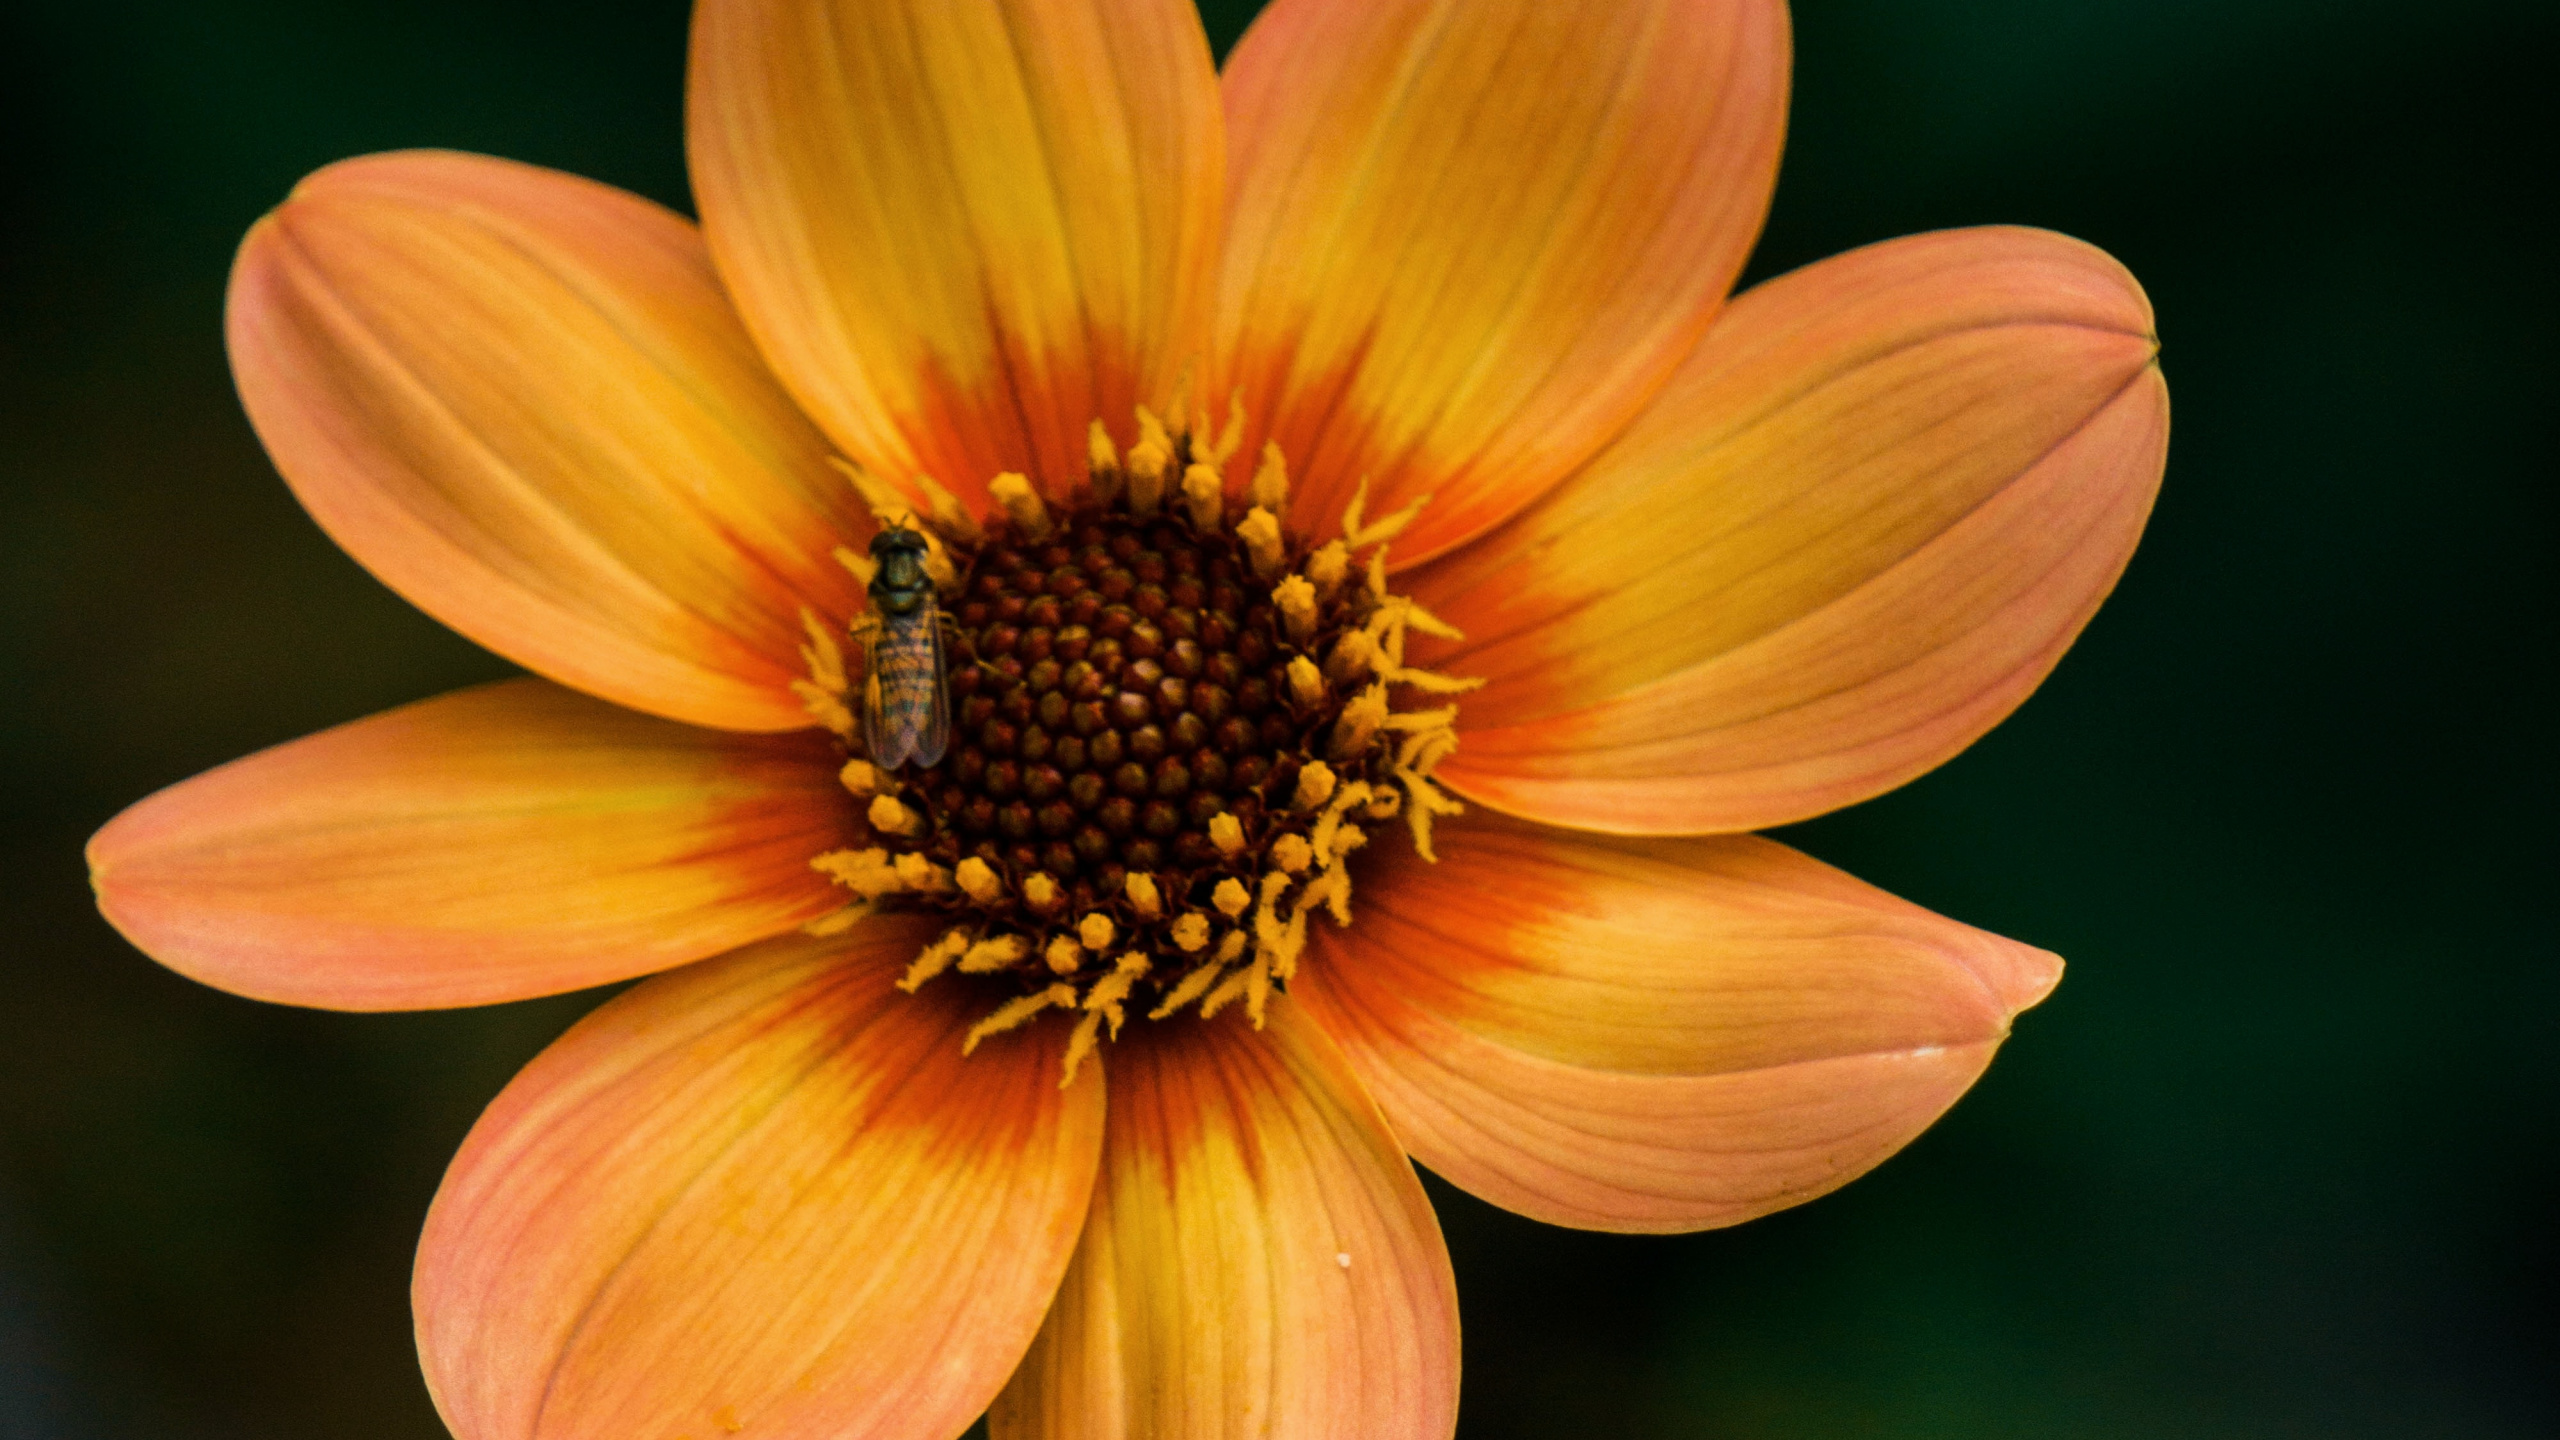 显花植物, 黄色的, 橙色, 野花, 花粉 壁纸 2560x1440 允许